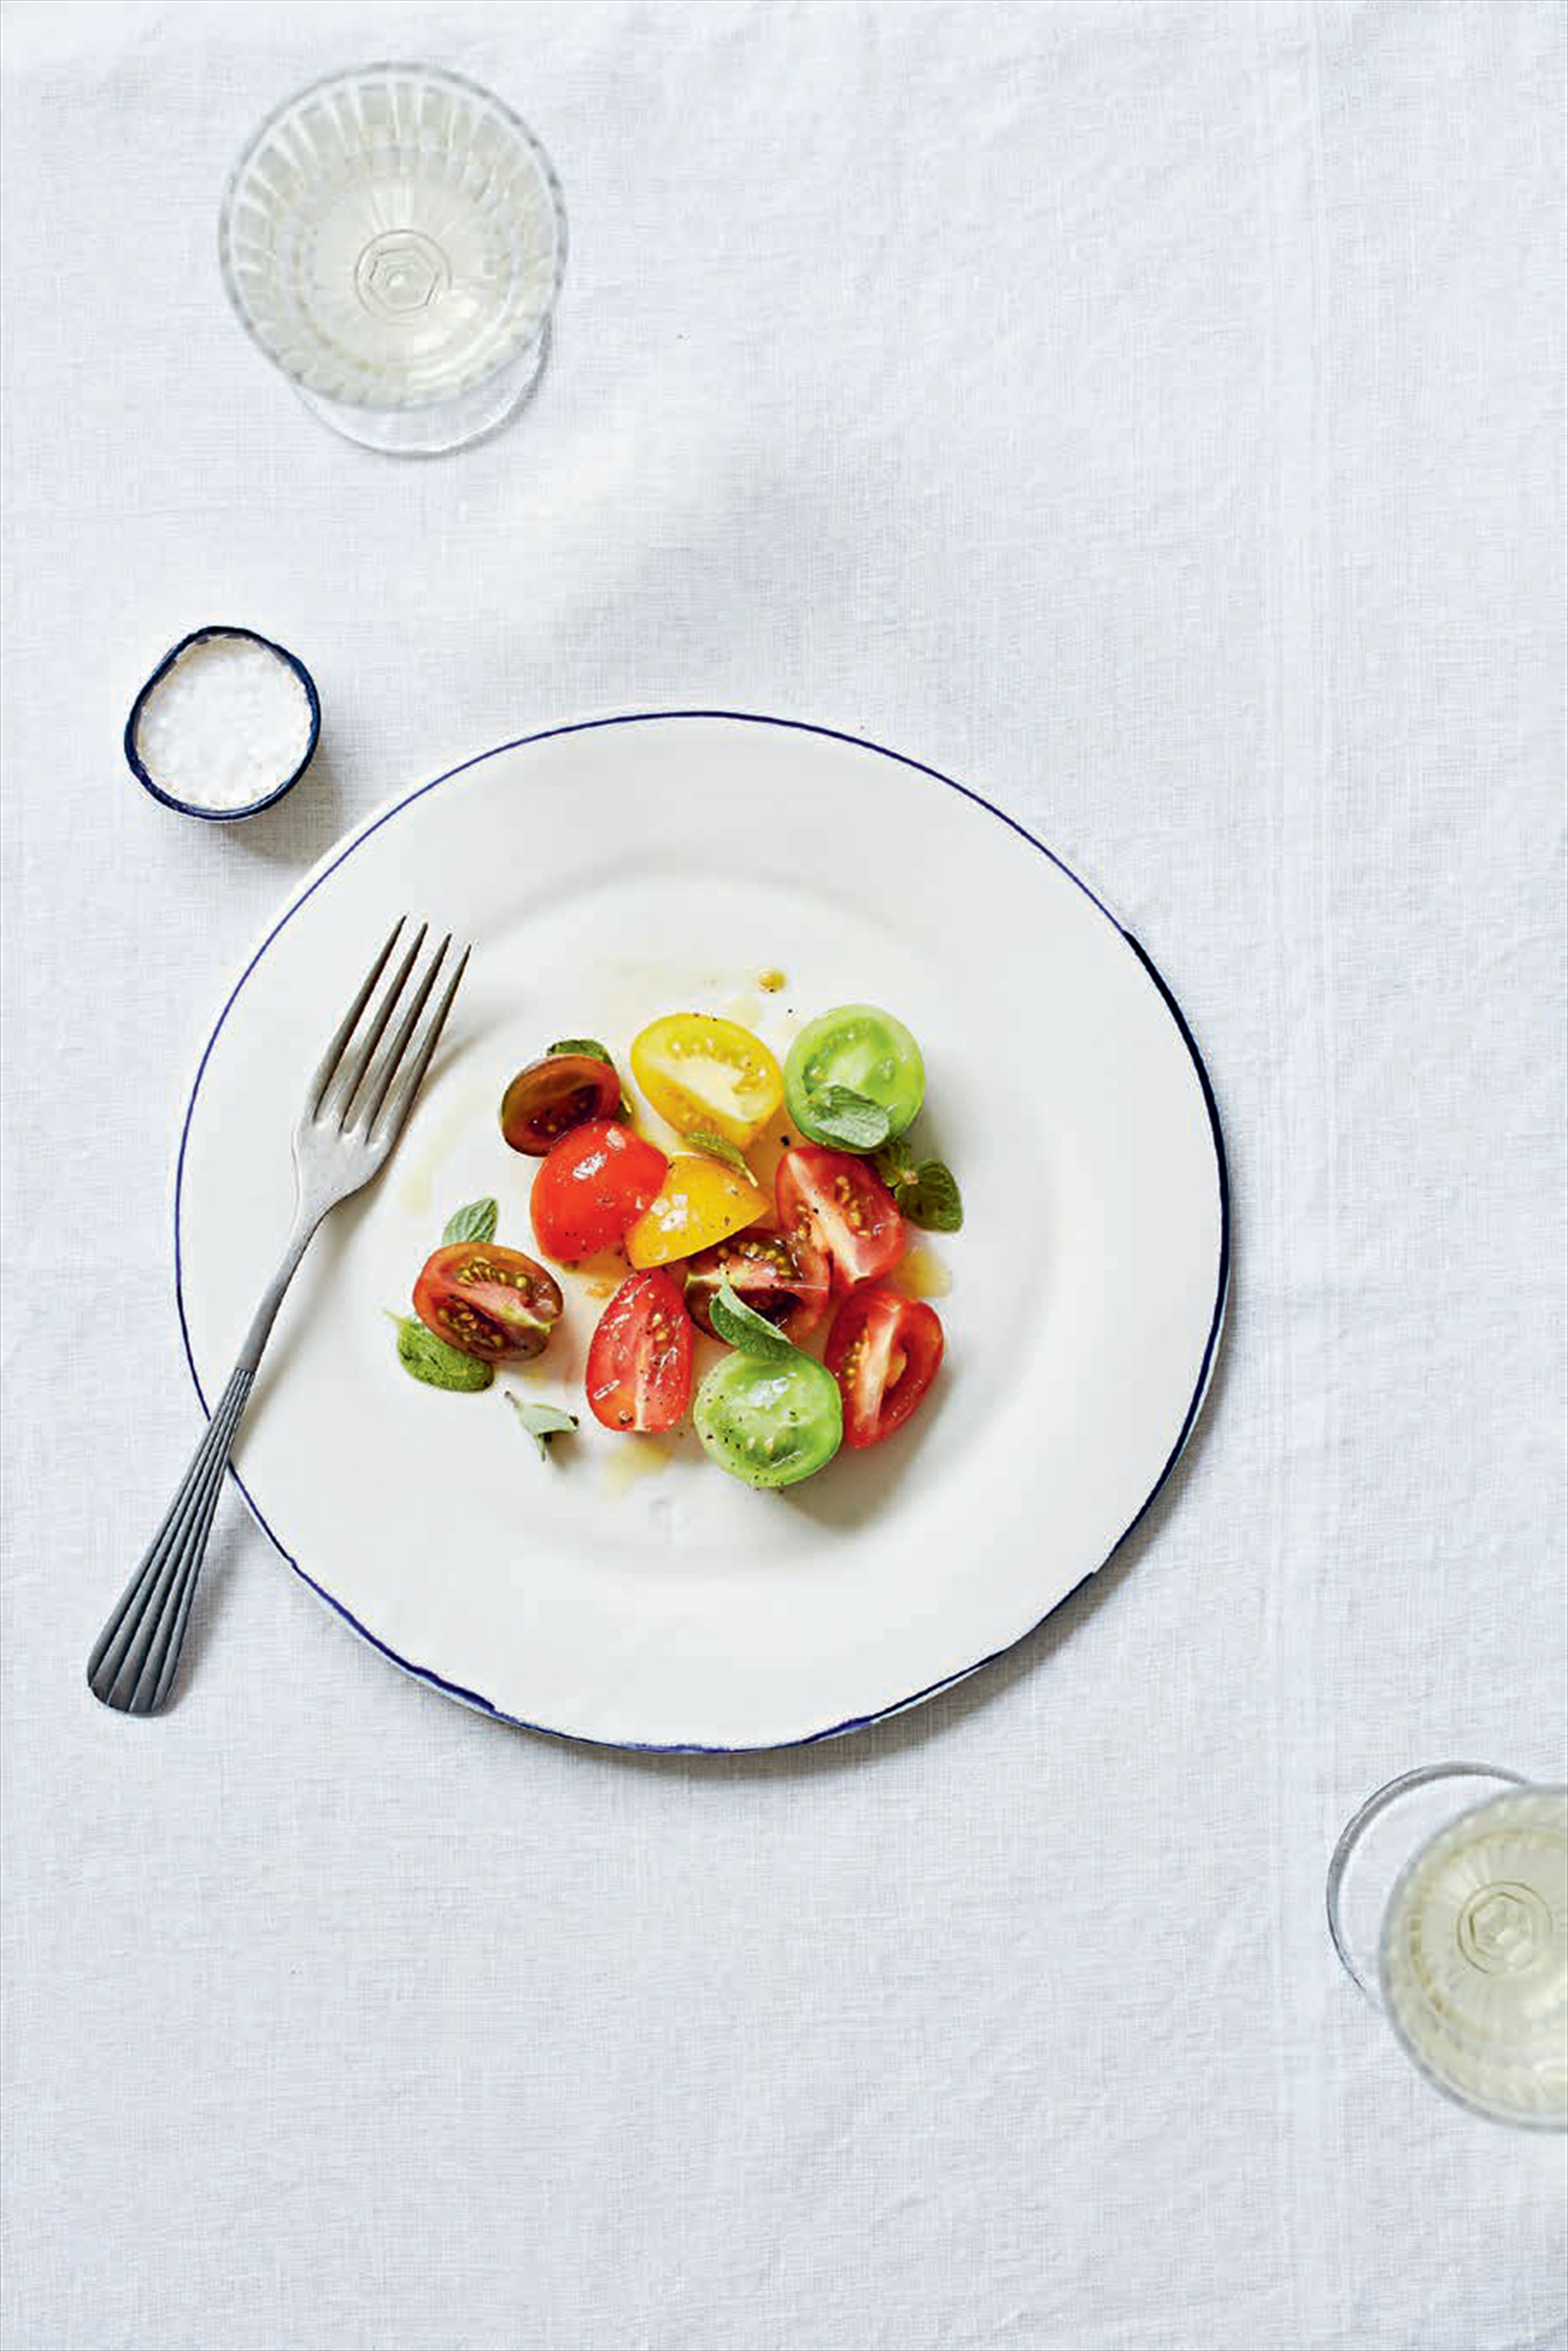 Tomato & oregano salad